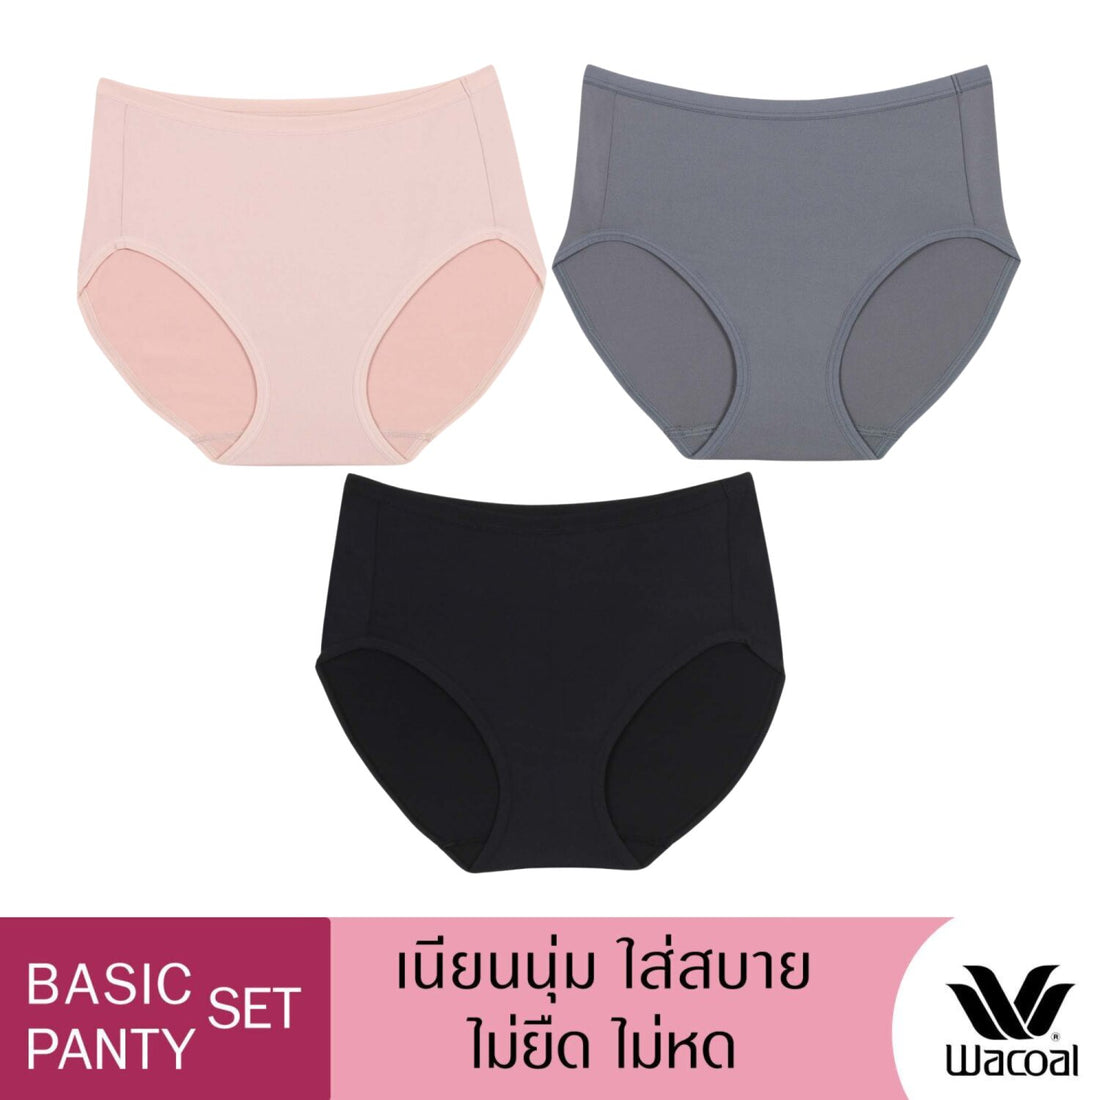 Wacoal Panty pack กางเกงในใส่สบาย รูปแบบเต็มตัว set 3 ชิ้น รุ่น WU4T34 คละสี (สีเบจ-สีดำ-สีเทา)